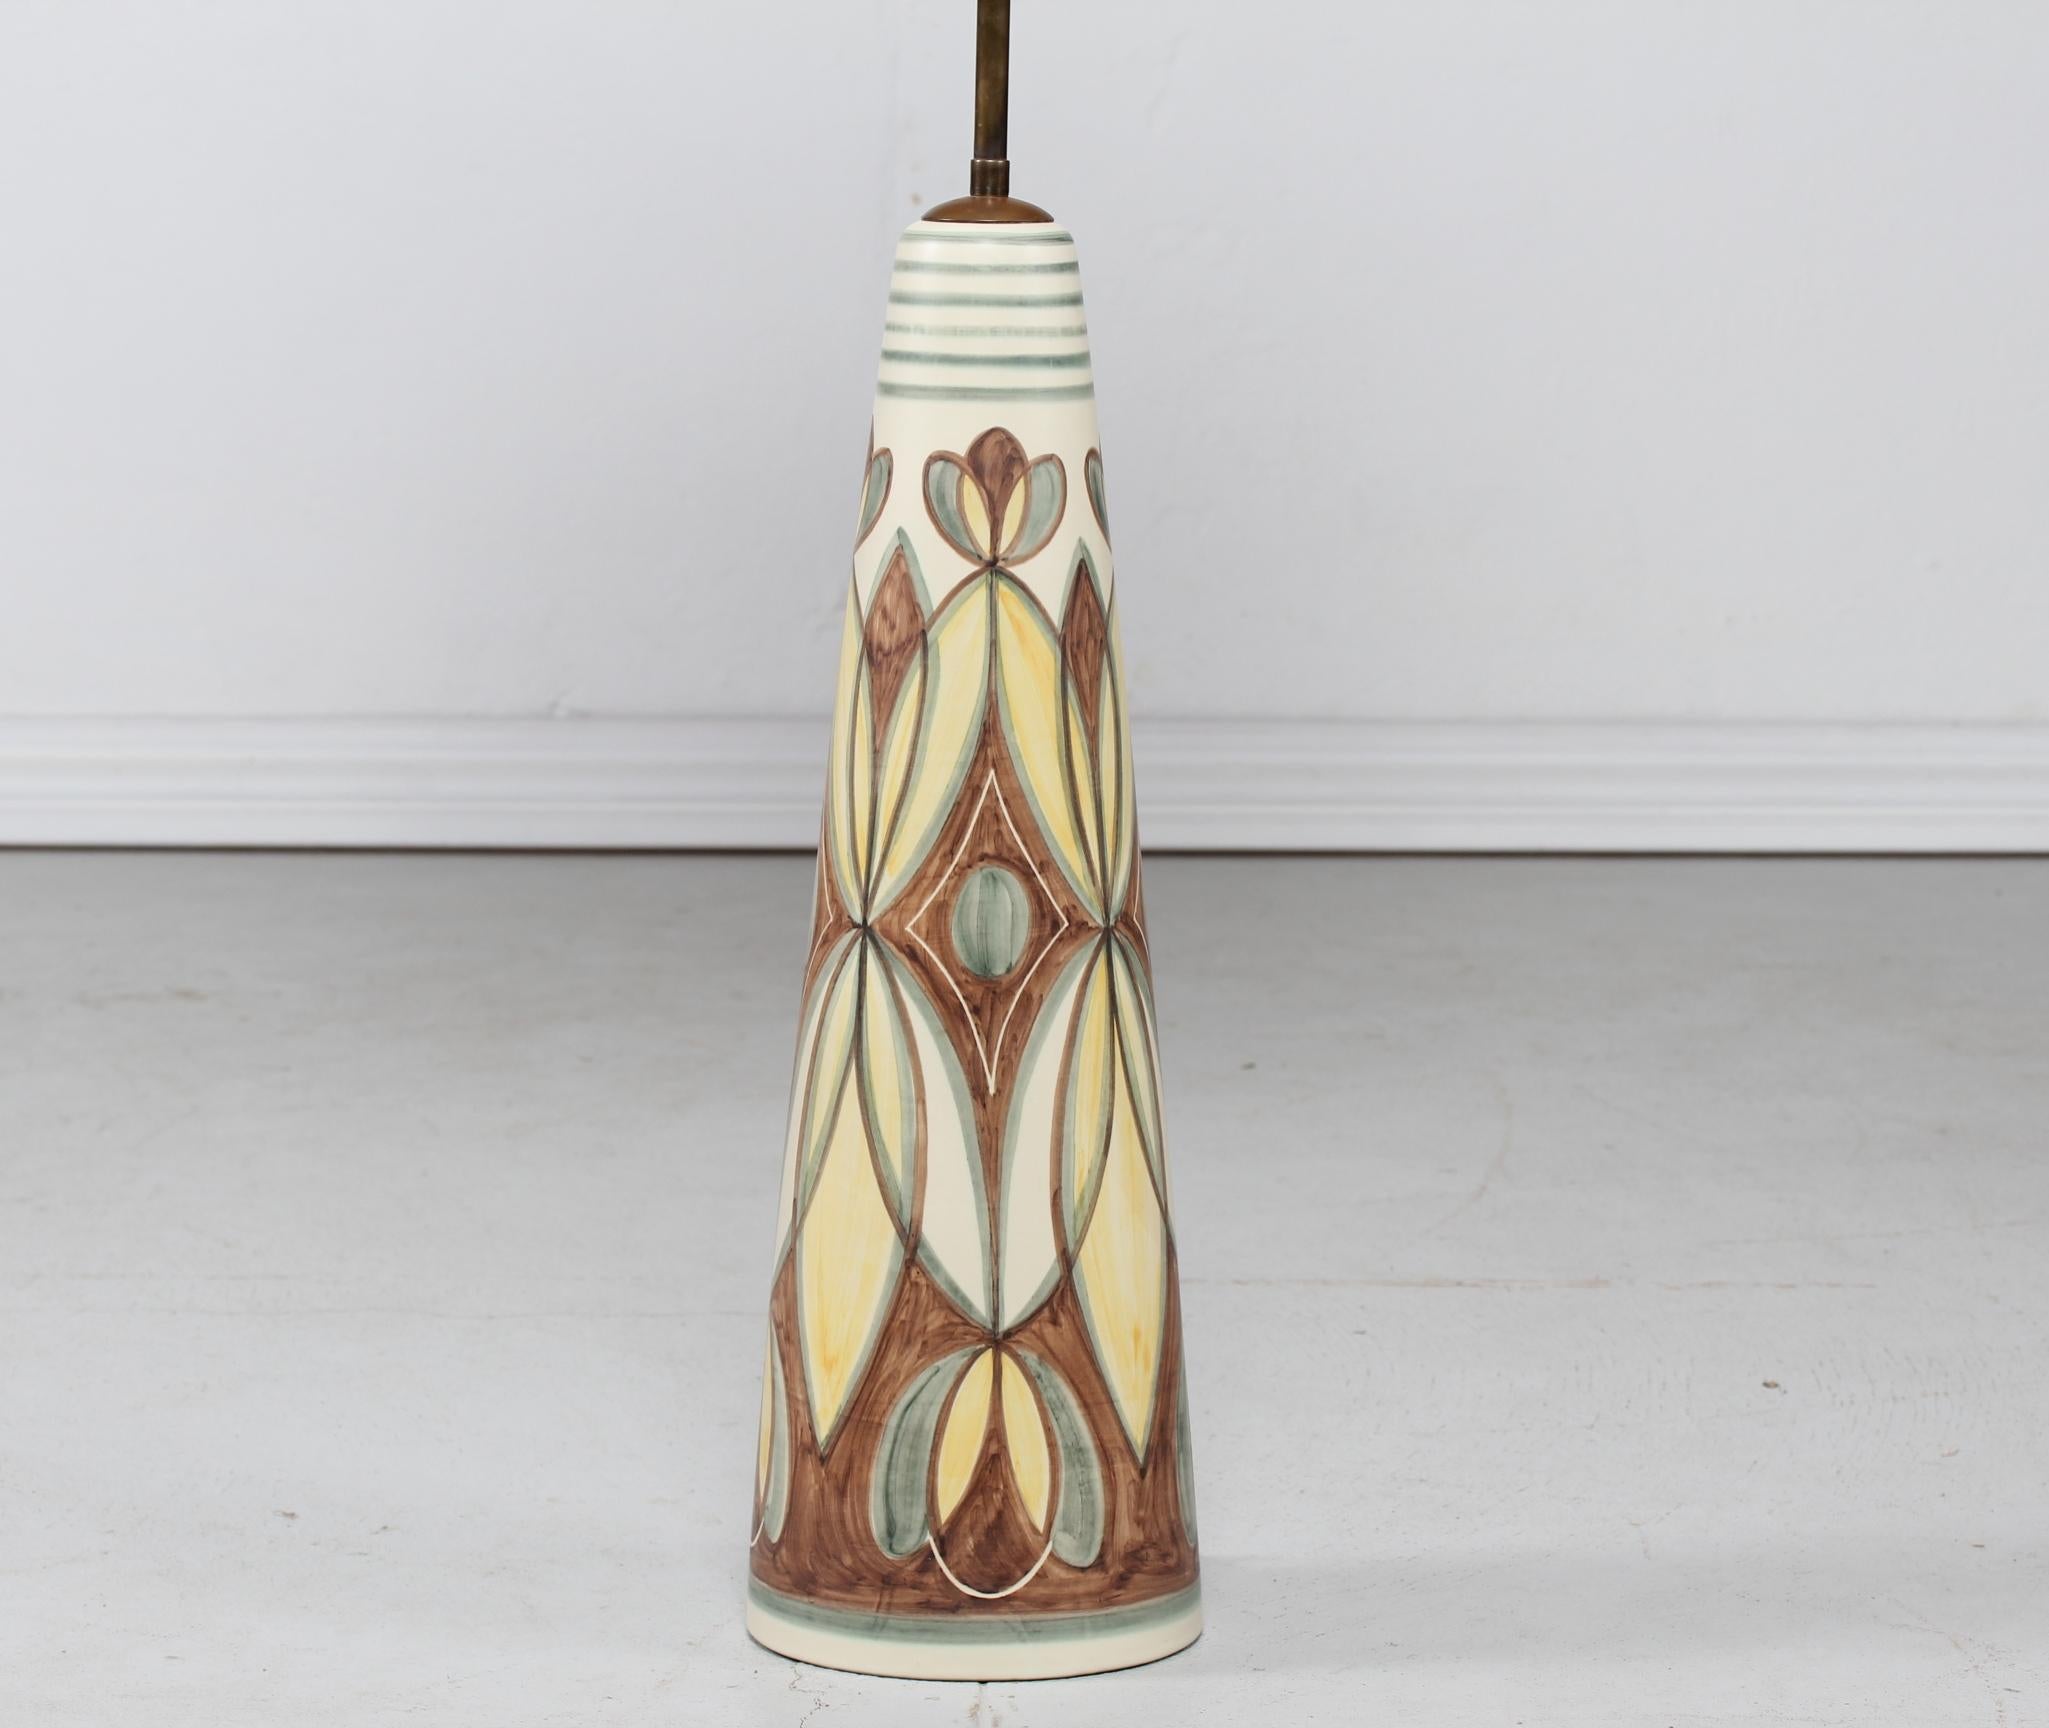 Scandinavian Modern Huge Ceramic Floor Lamp by Rigmor Nielsen for Søholm Denmark 1950s Mid-Century For Sale